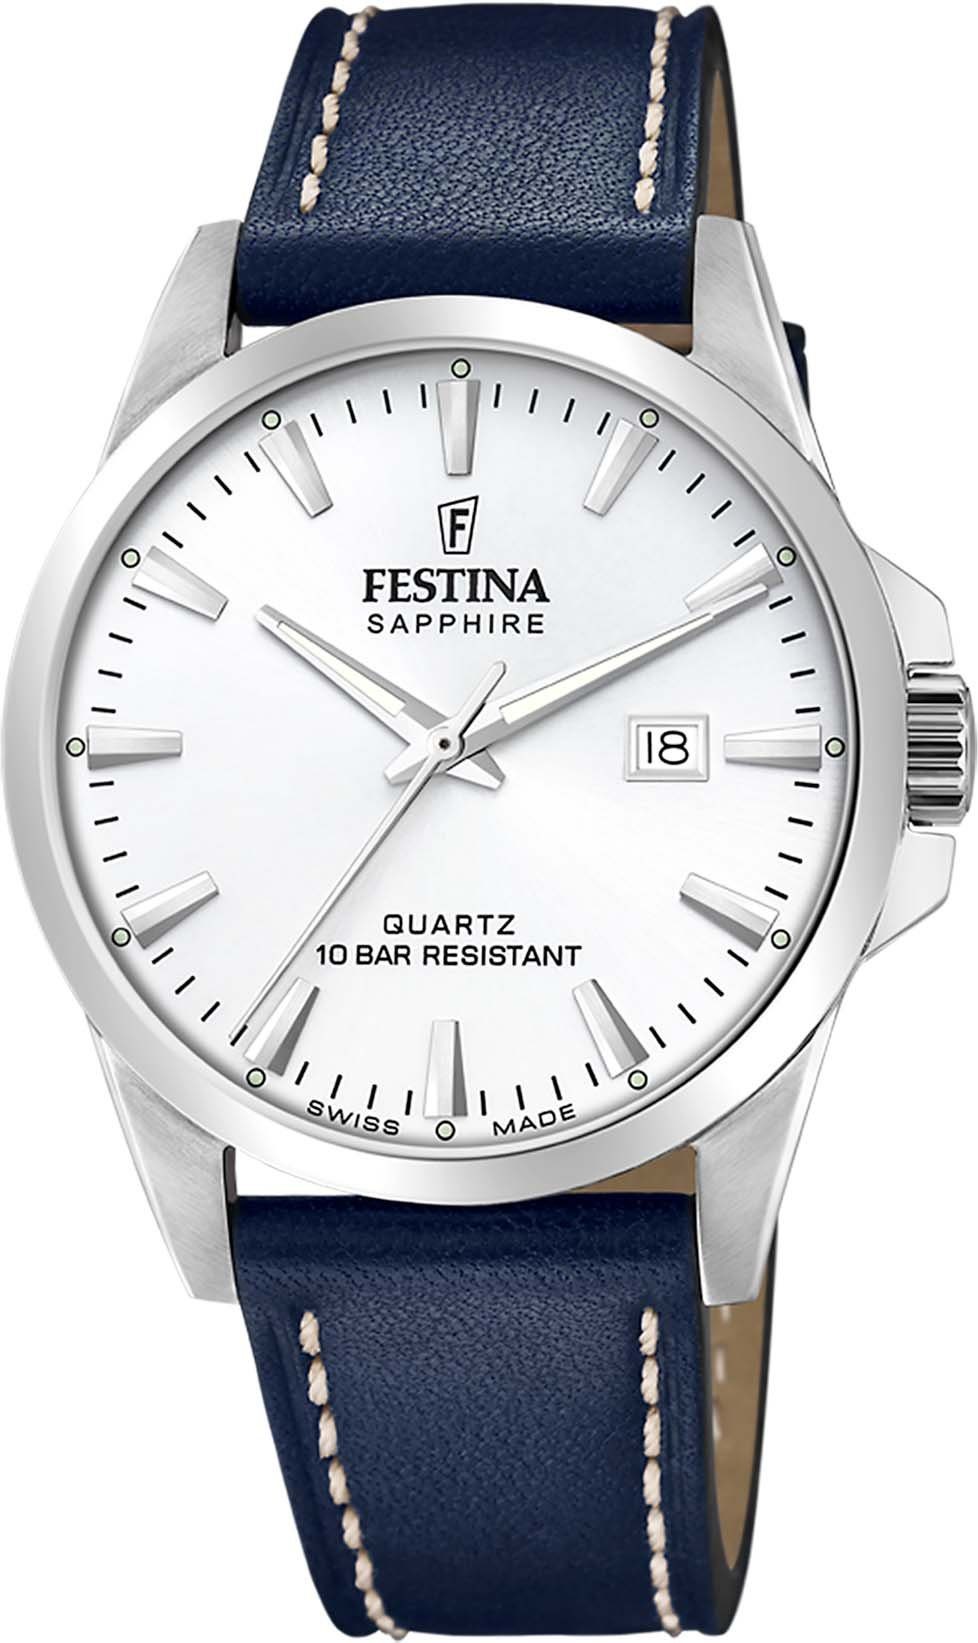 Festina Schweizer Uhr Made, F20025/2 Swiss